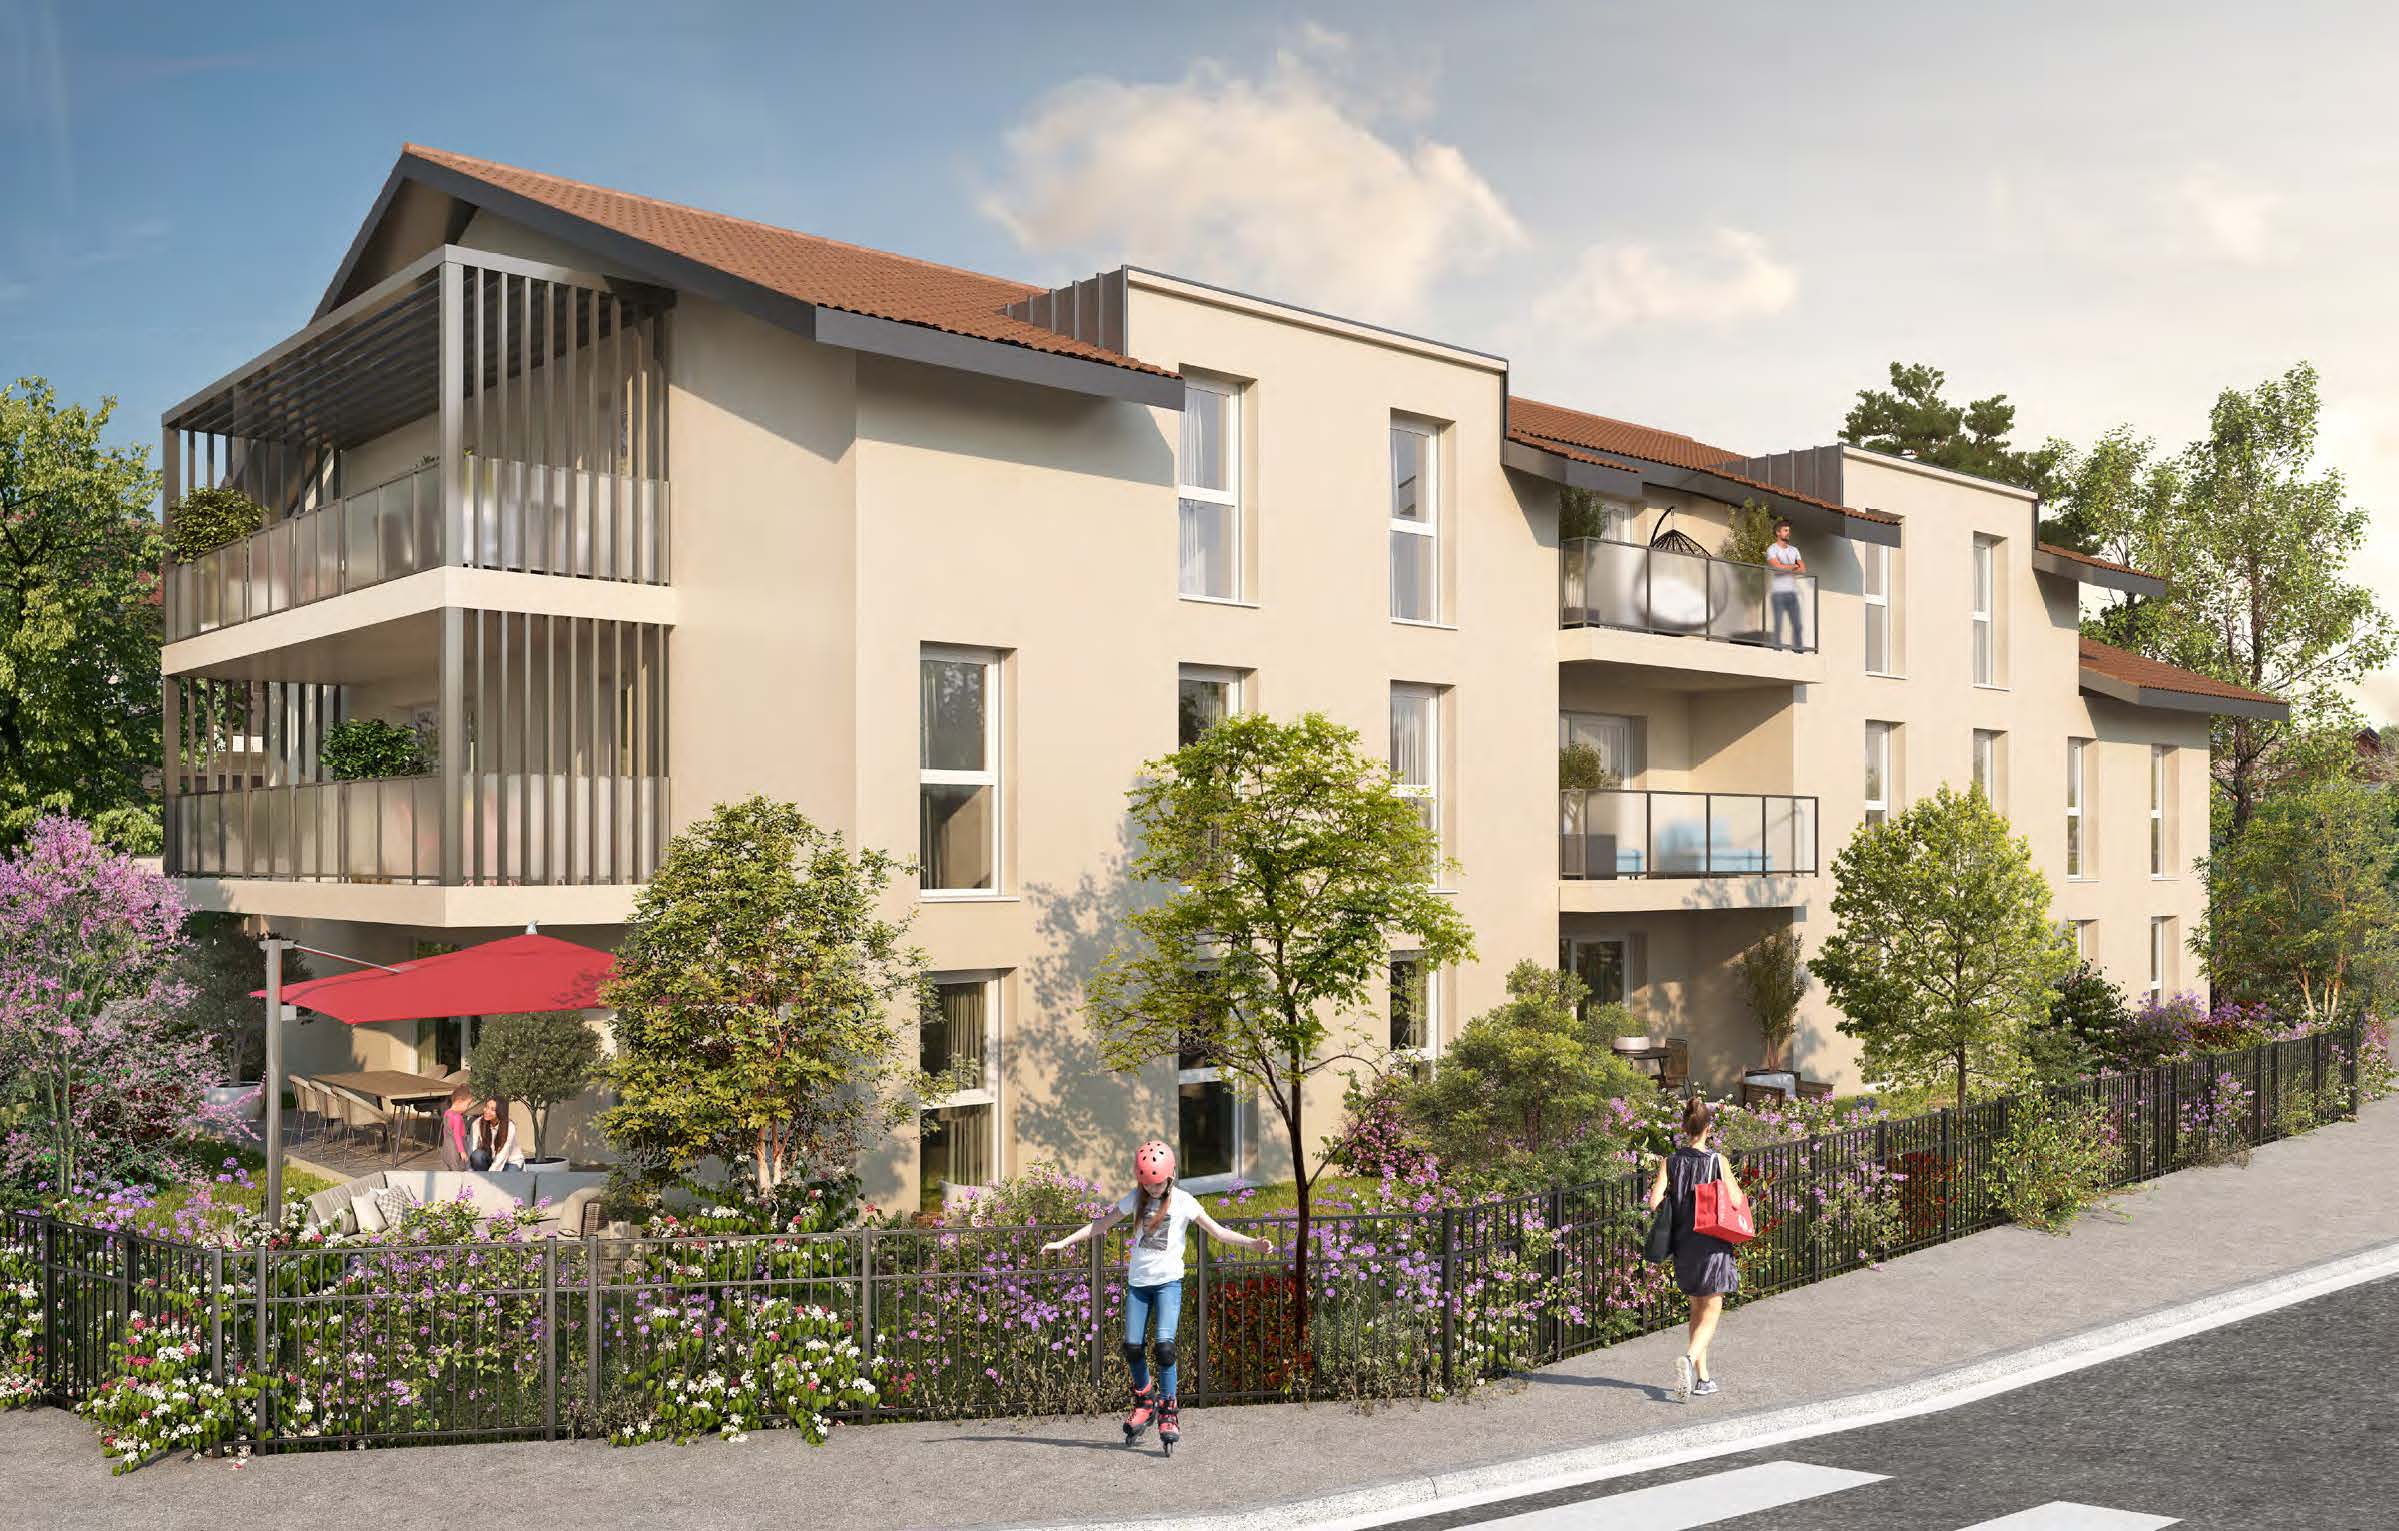 Programme immobilier neuf Saint-Pierre-en-Faucigny secteur Toisinges proche Bonneville